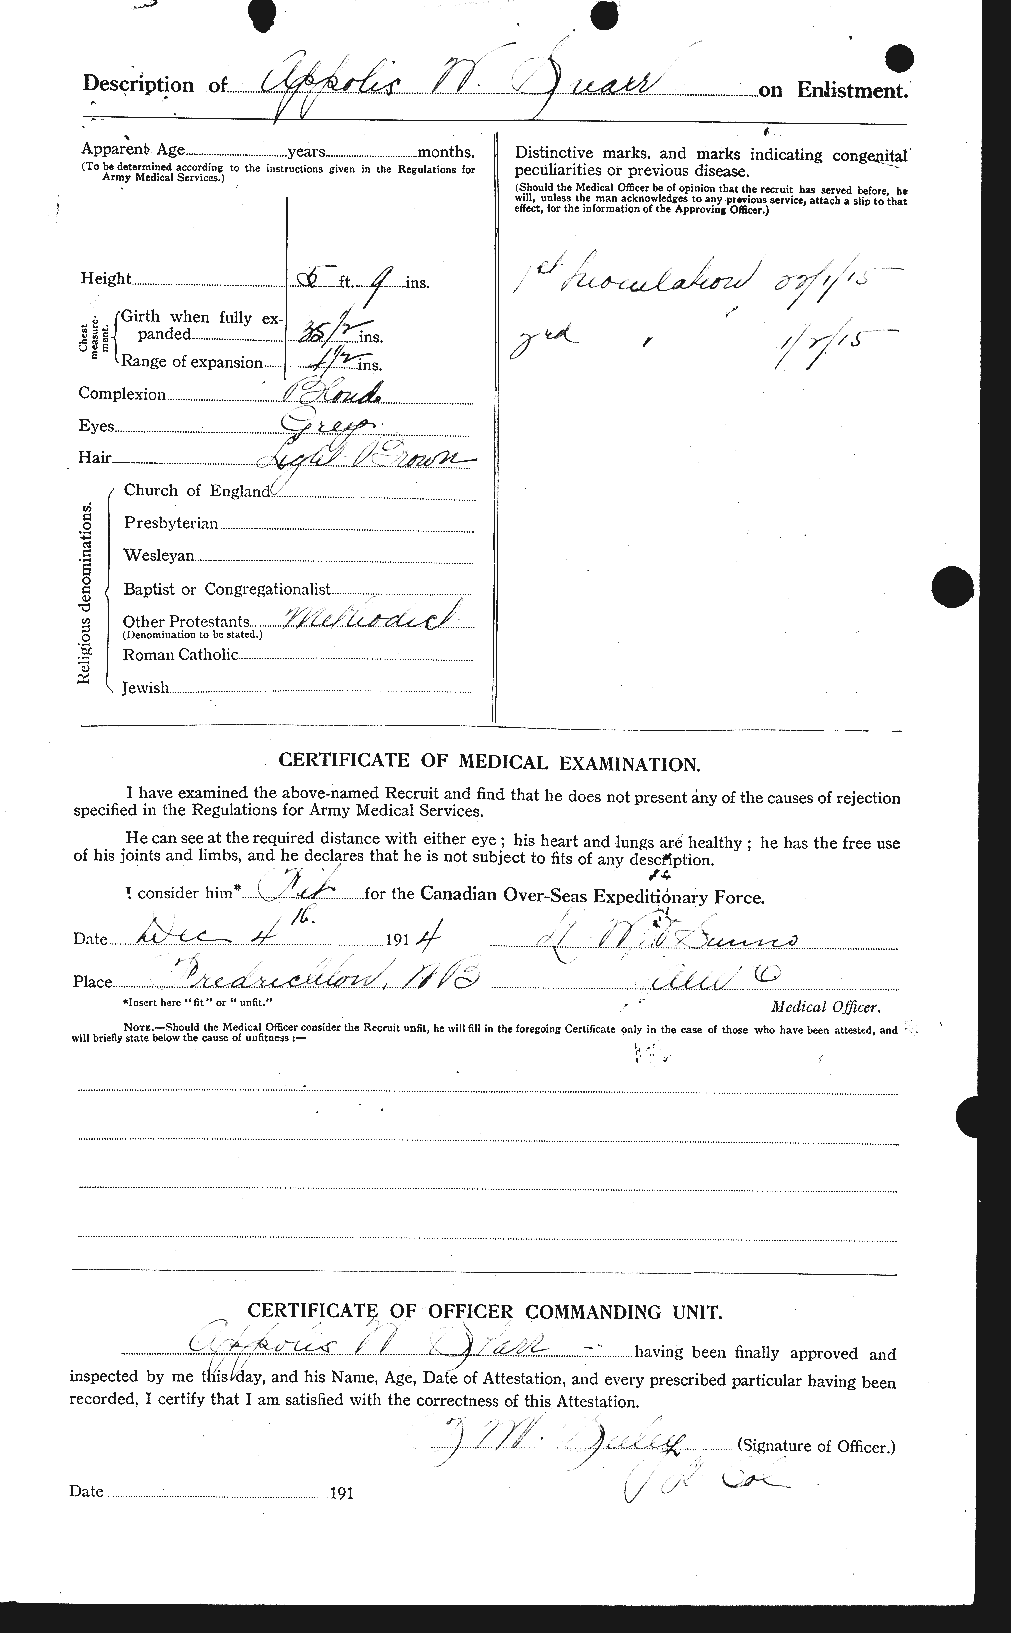 Dossiers du Personnel de la Première Guerre mondiale - CEC 111301b